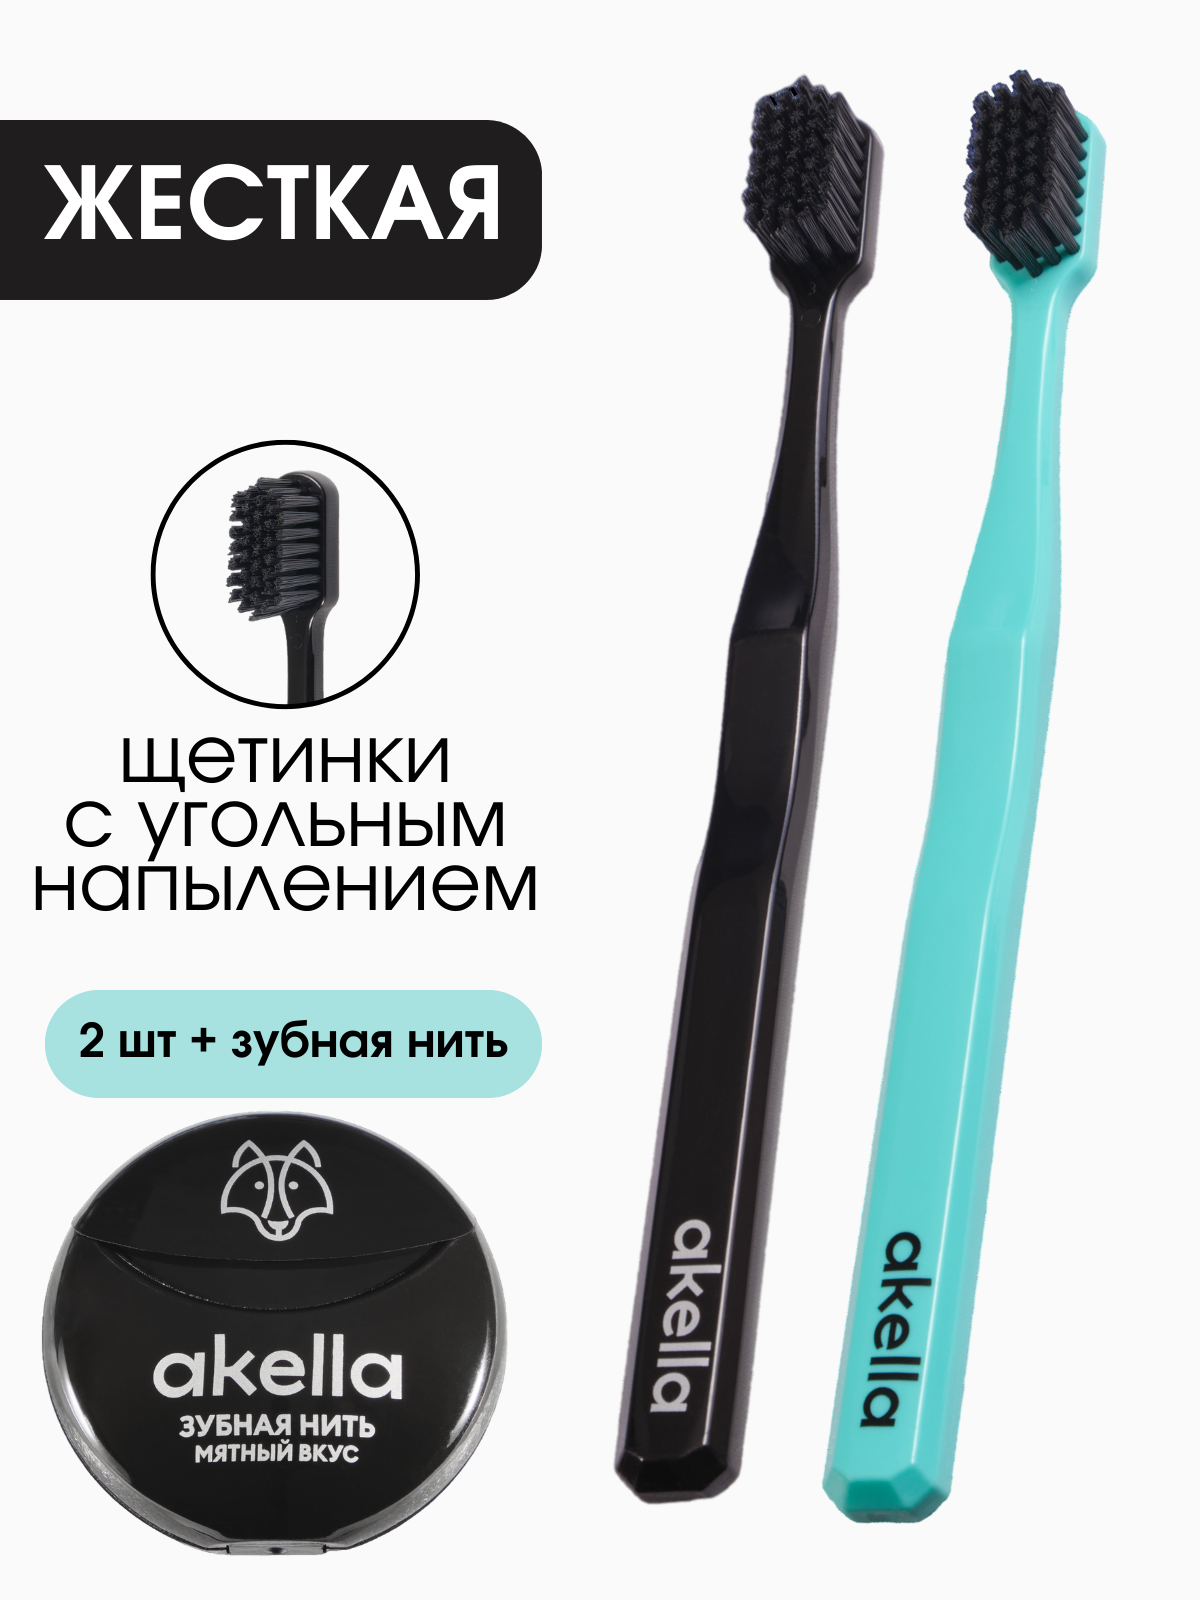 Зубная щетка Akella жесткая для взрослых 3 шт, зубная нить 40 м открывая россию самые красивые места нашей страны глазами фотографов путешественников russian explorers